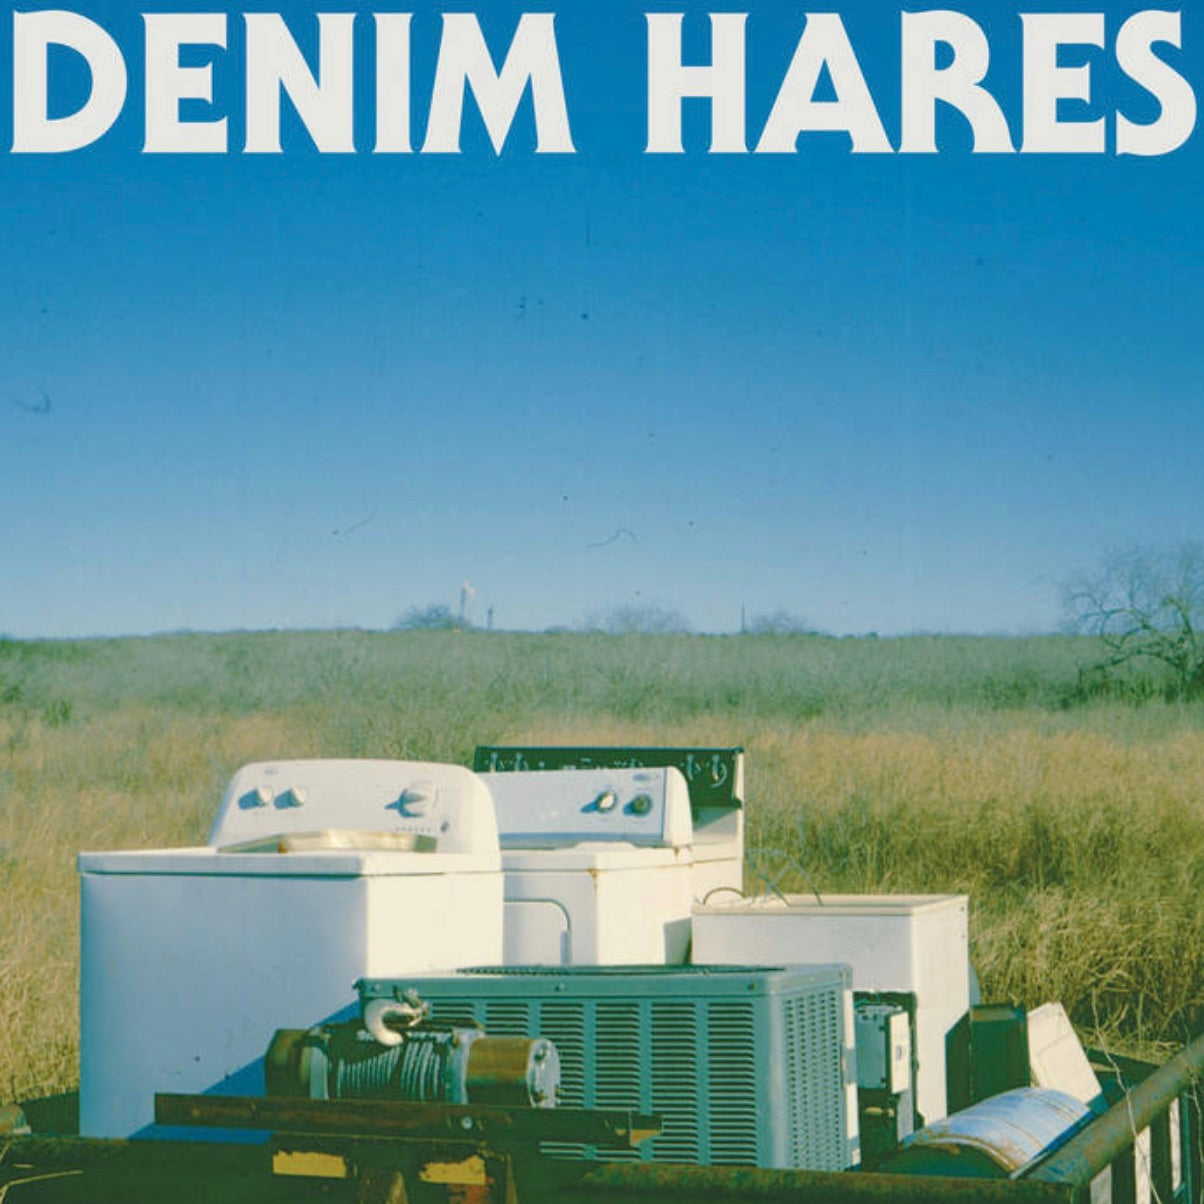 OMR-016 DENIM HARES s/t 12 inch Vinyl (Black Vinyl)